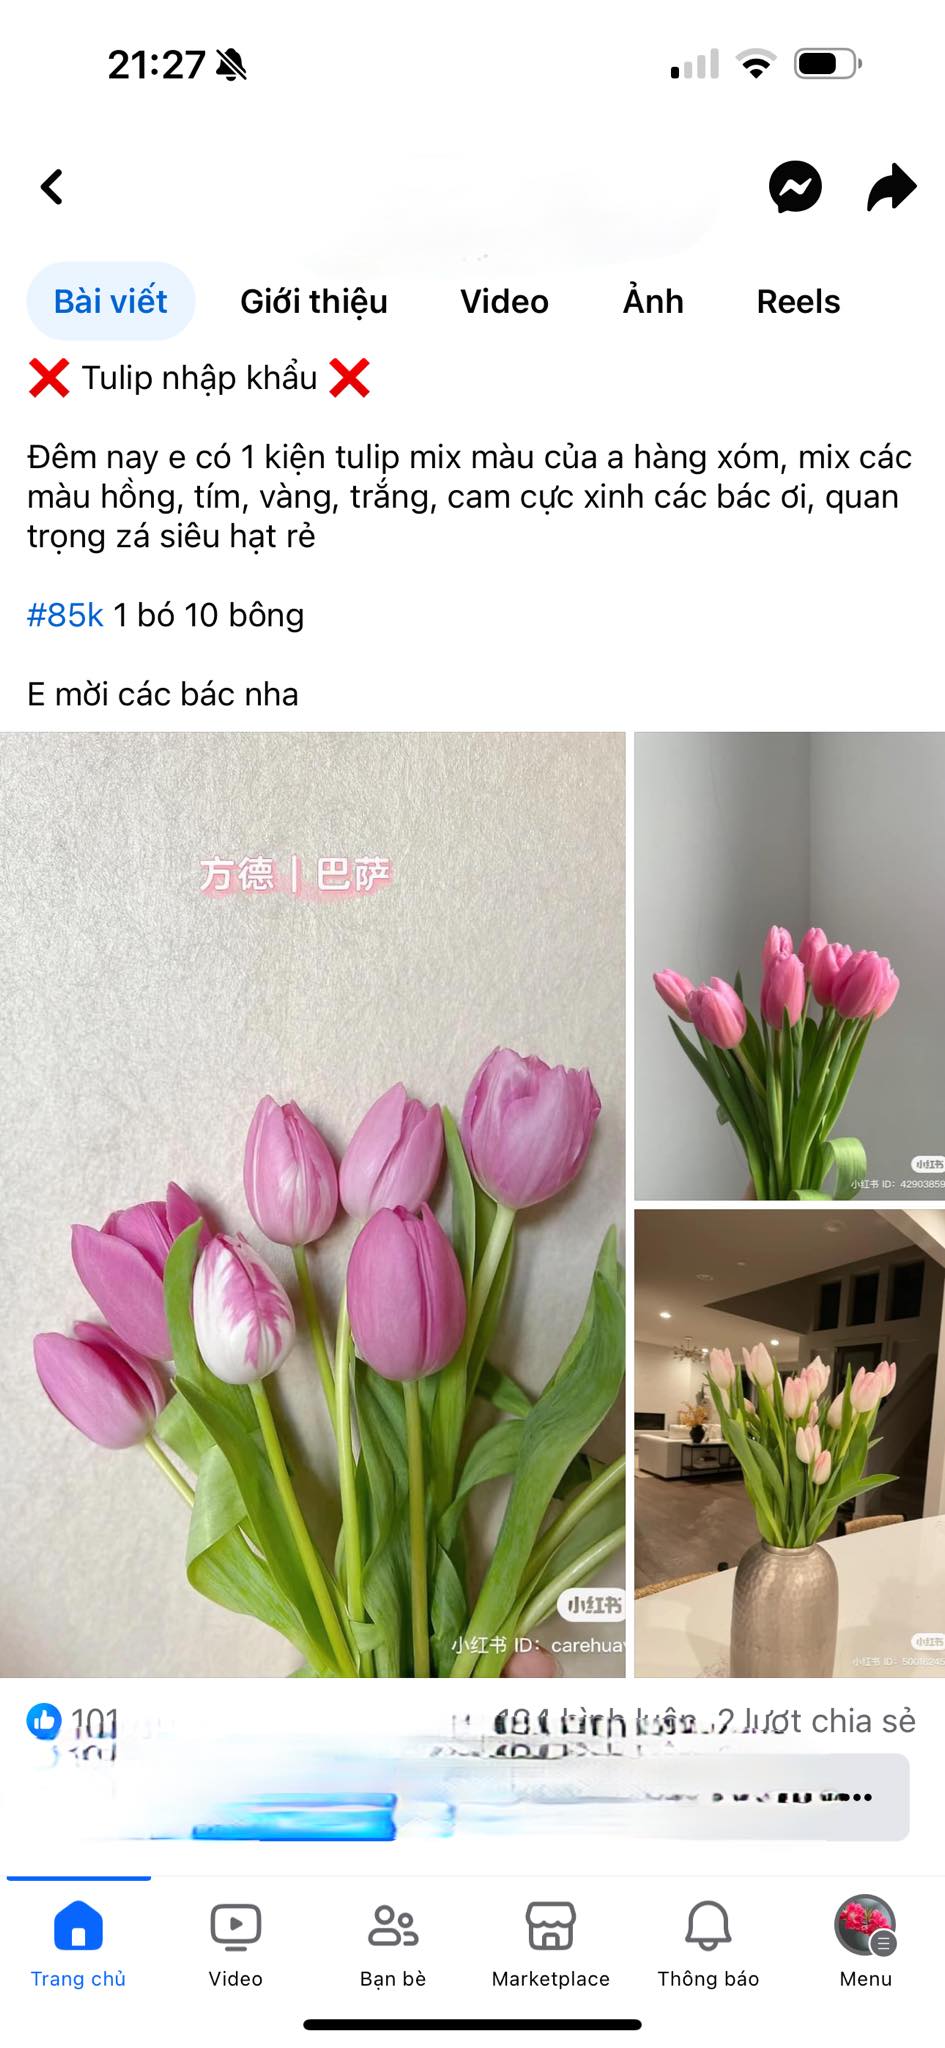 Mùa này hoa tulip rất rẻ, từ 300 nghìn/bó hàng Hà Lan chỉ còn vài chục nghìn: Làm thế này thì tươi 10 ngày- Ảnh 1.